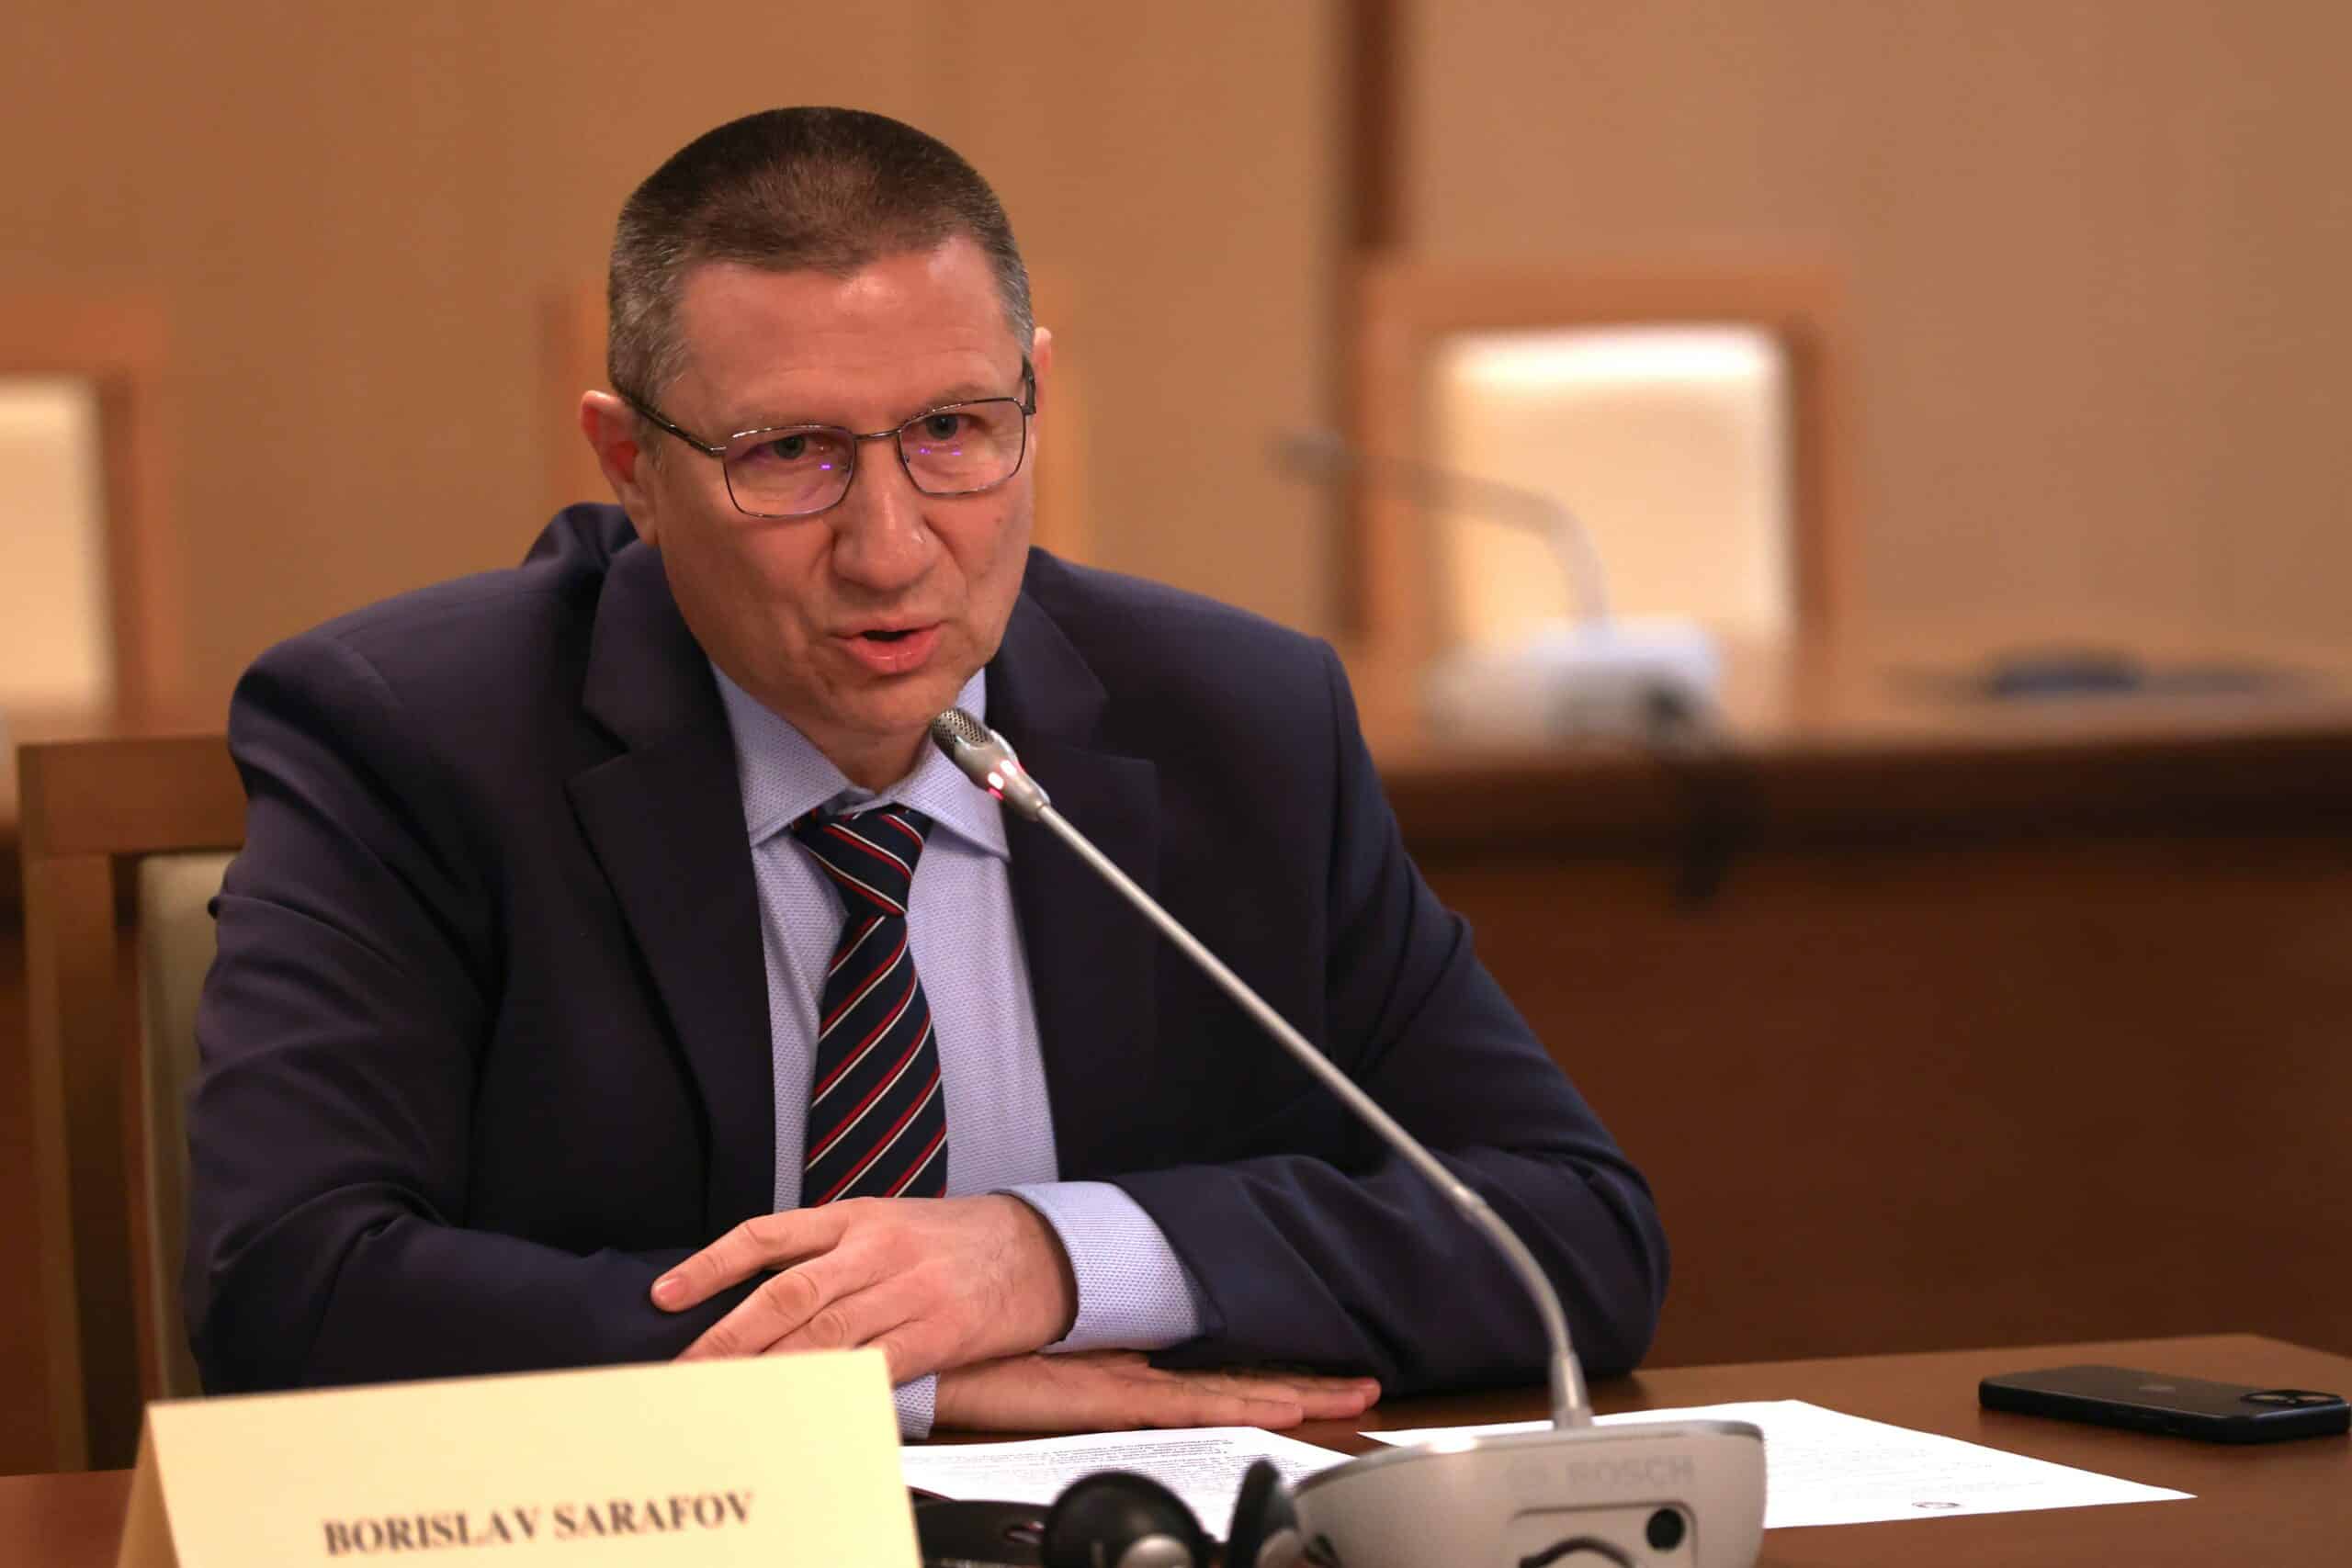 Главният прокурор на Република България Борислав Сарафов проведе работна закуска